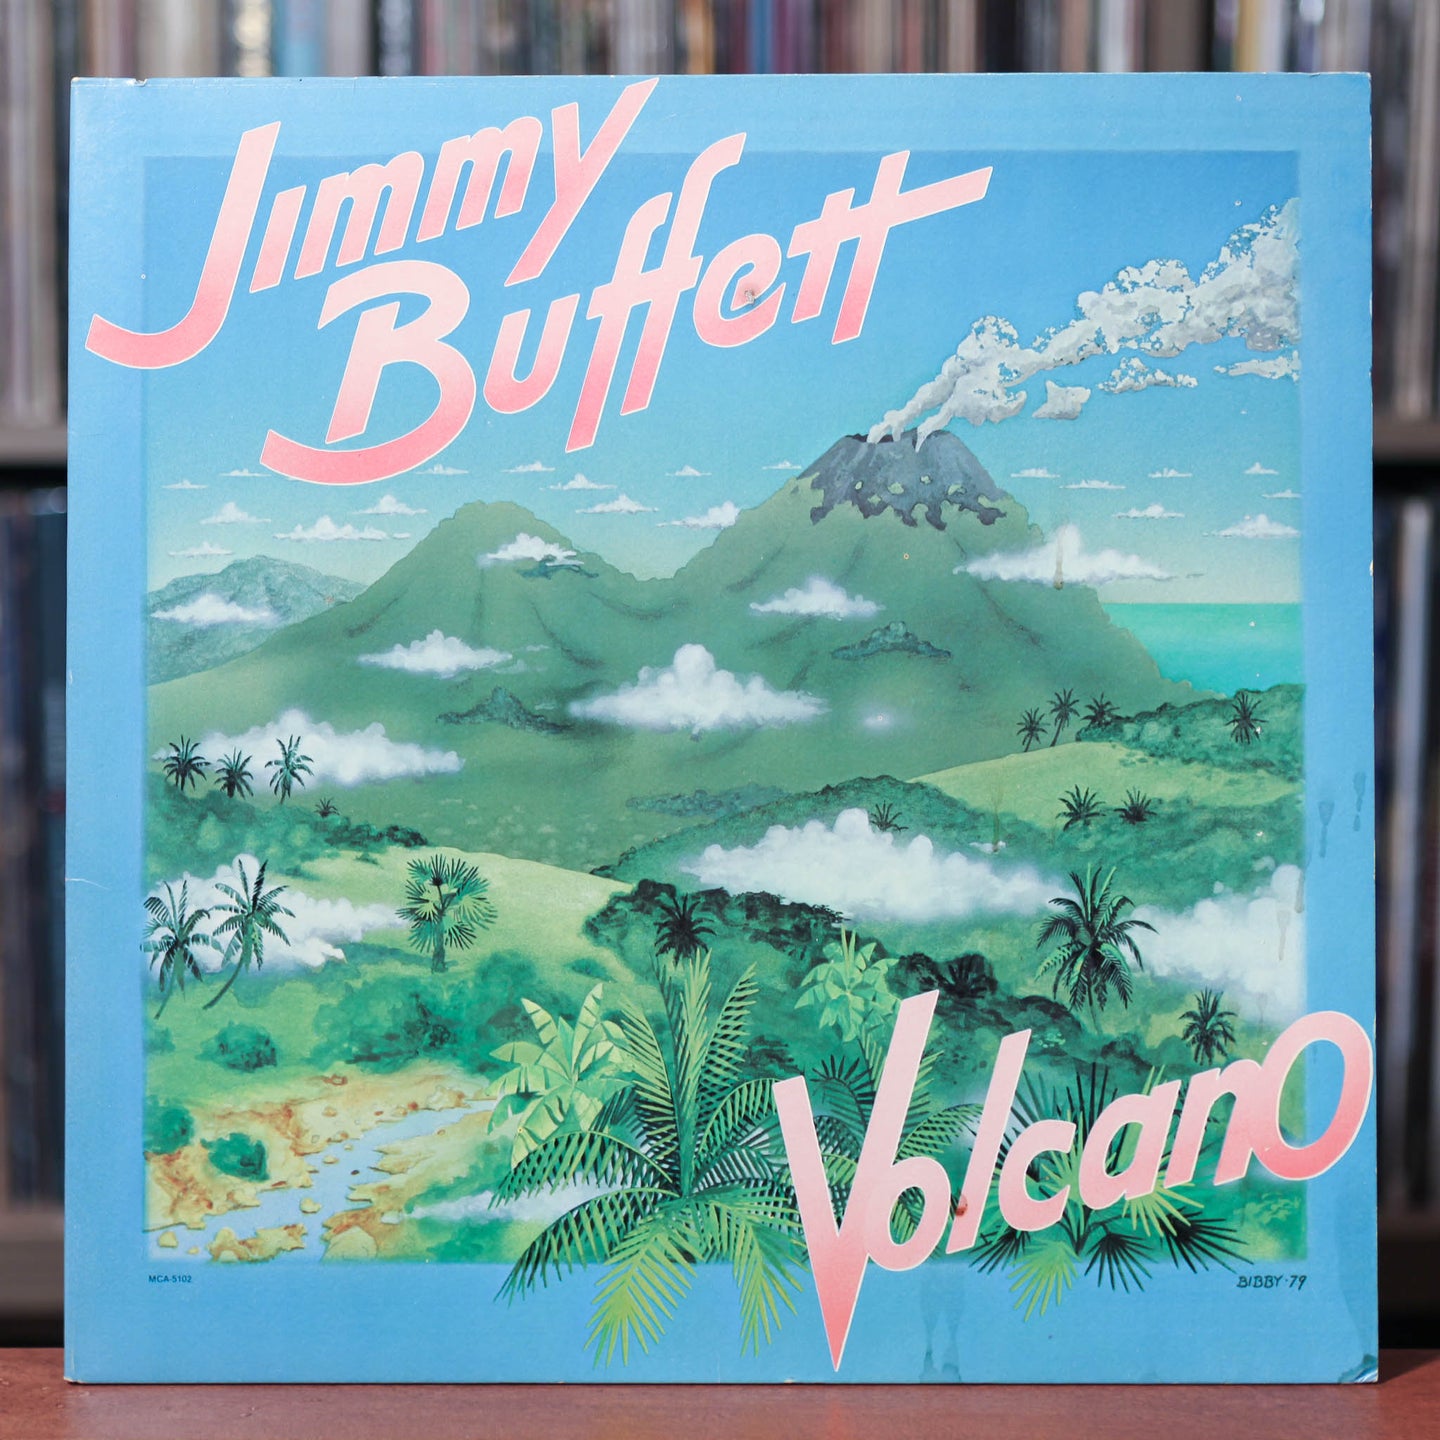 Jimmy Buffett - Volcano - 1979 MCA, VG+/VG+